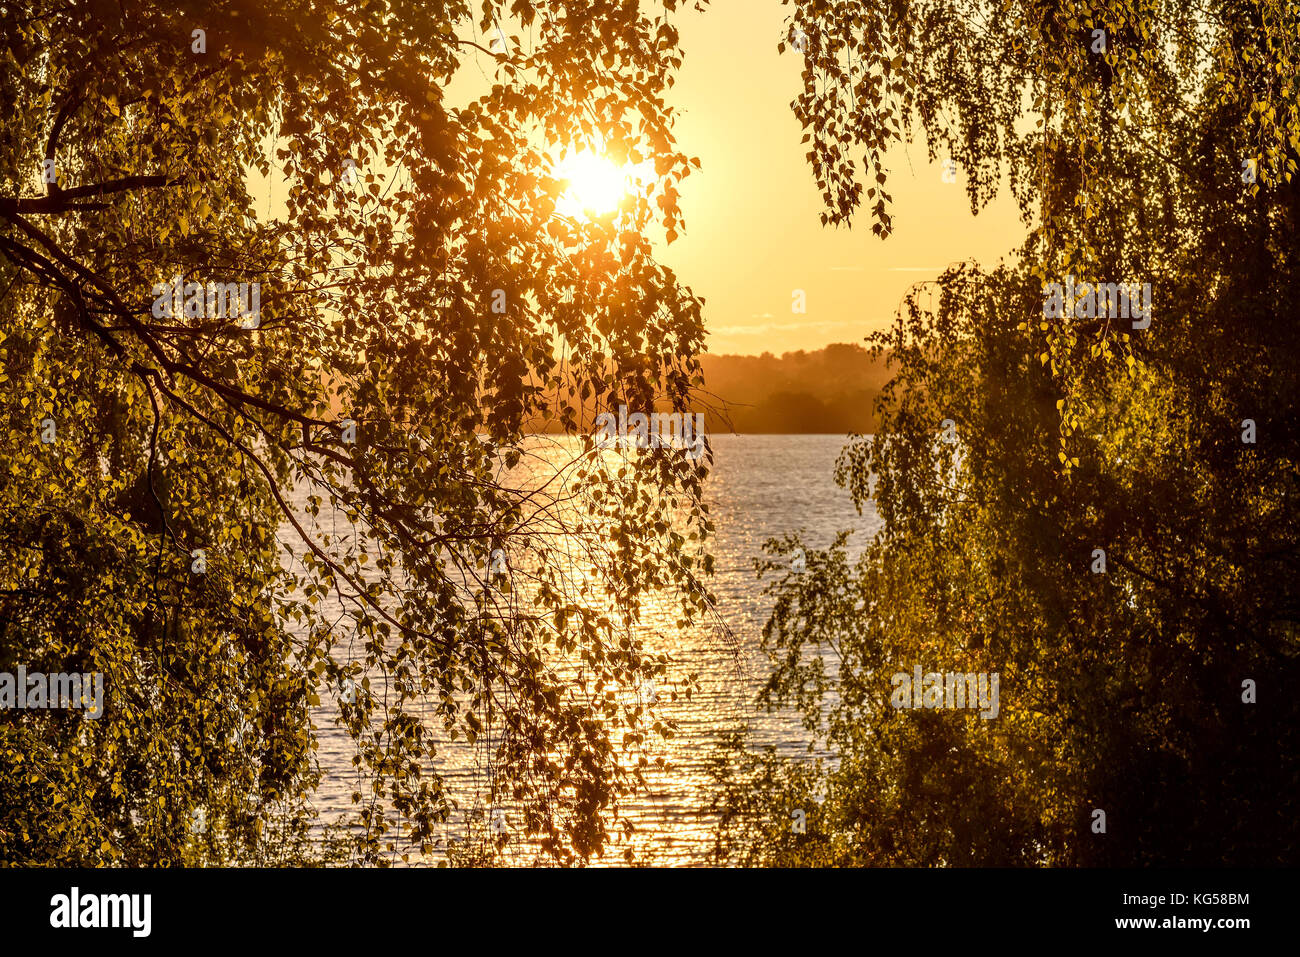 Bella vista dalla riva attraverso le foglie e rami di betulle sul fiume, il sole e i riflessi sull'acqua in orange la luce del tramonto Foto Stock